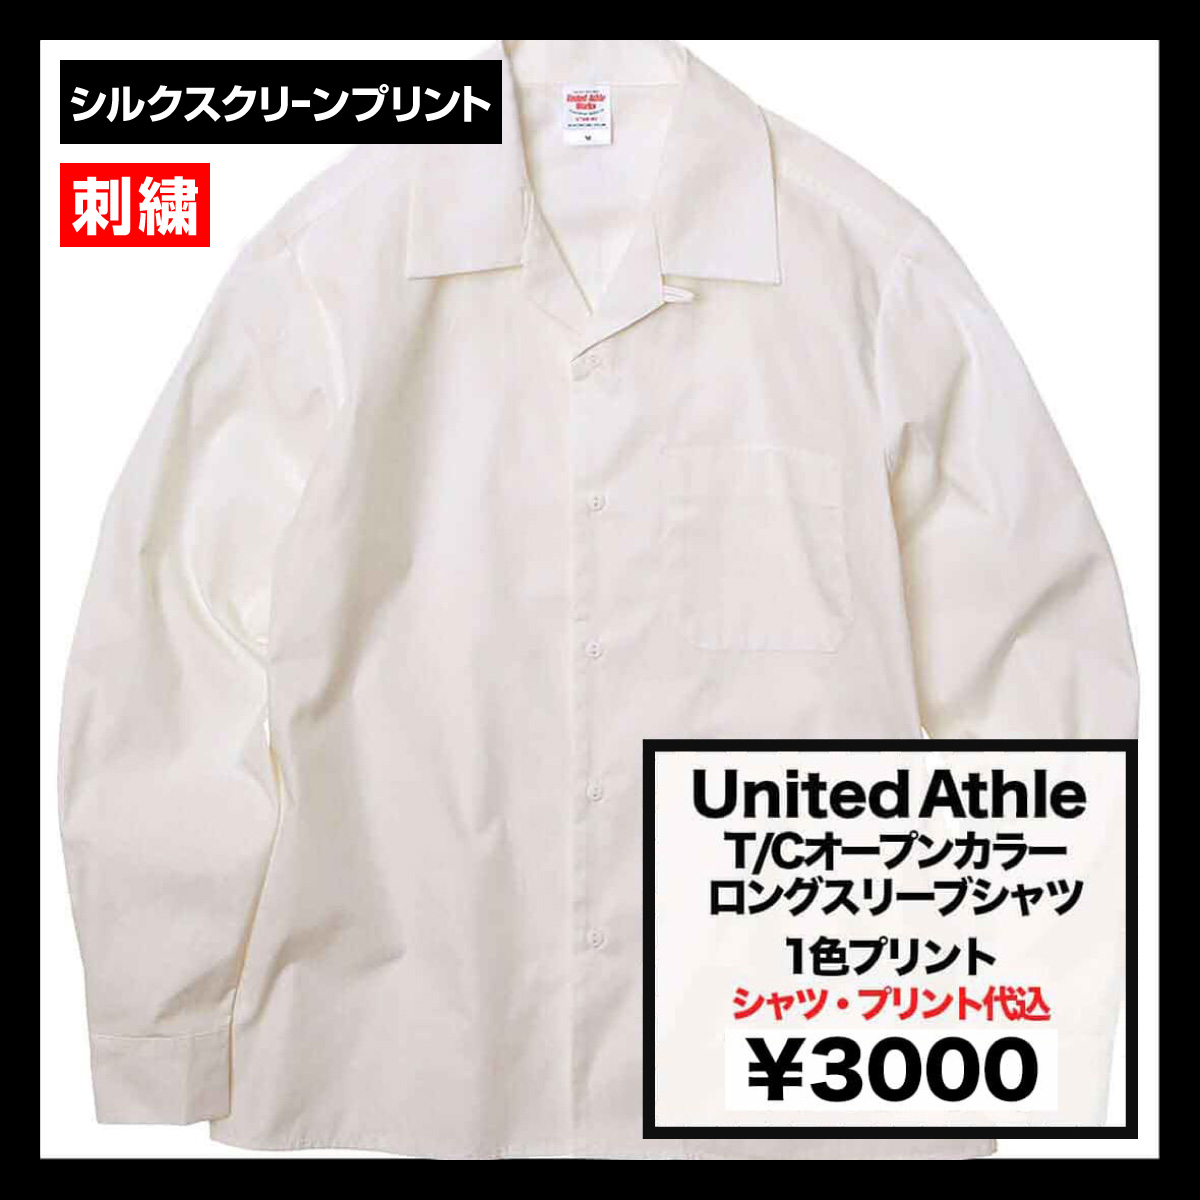 United Athle ユナイテッドアスレ T/Cオープンカラーロングスリーブシャツ (品番1760-01)